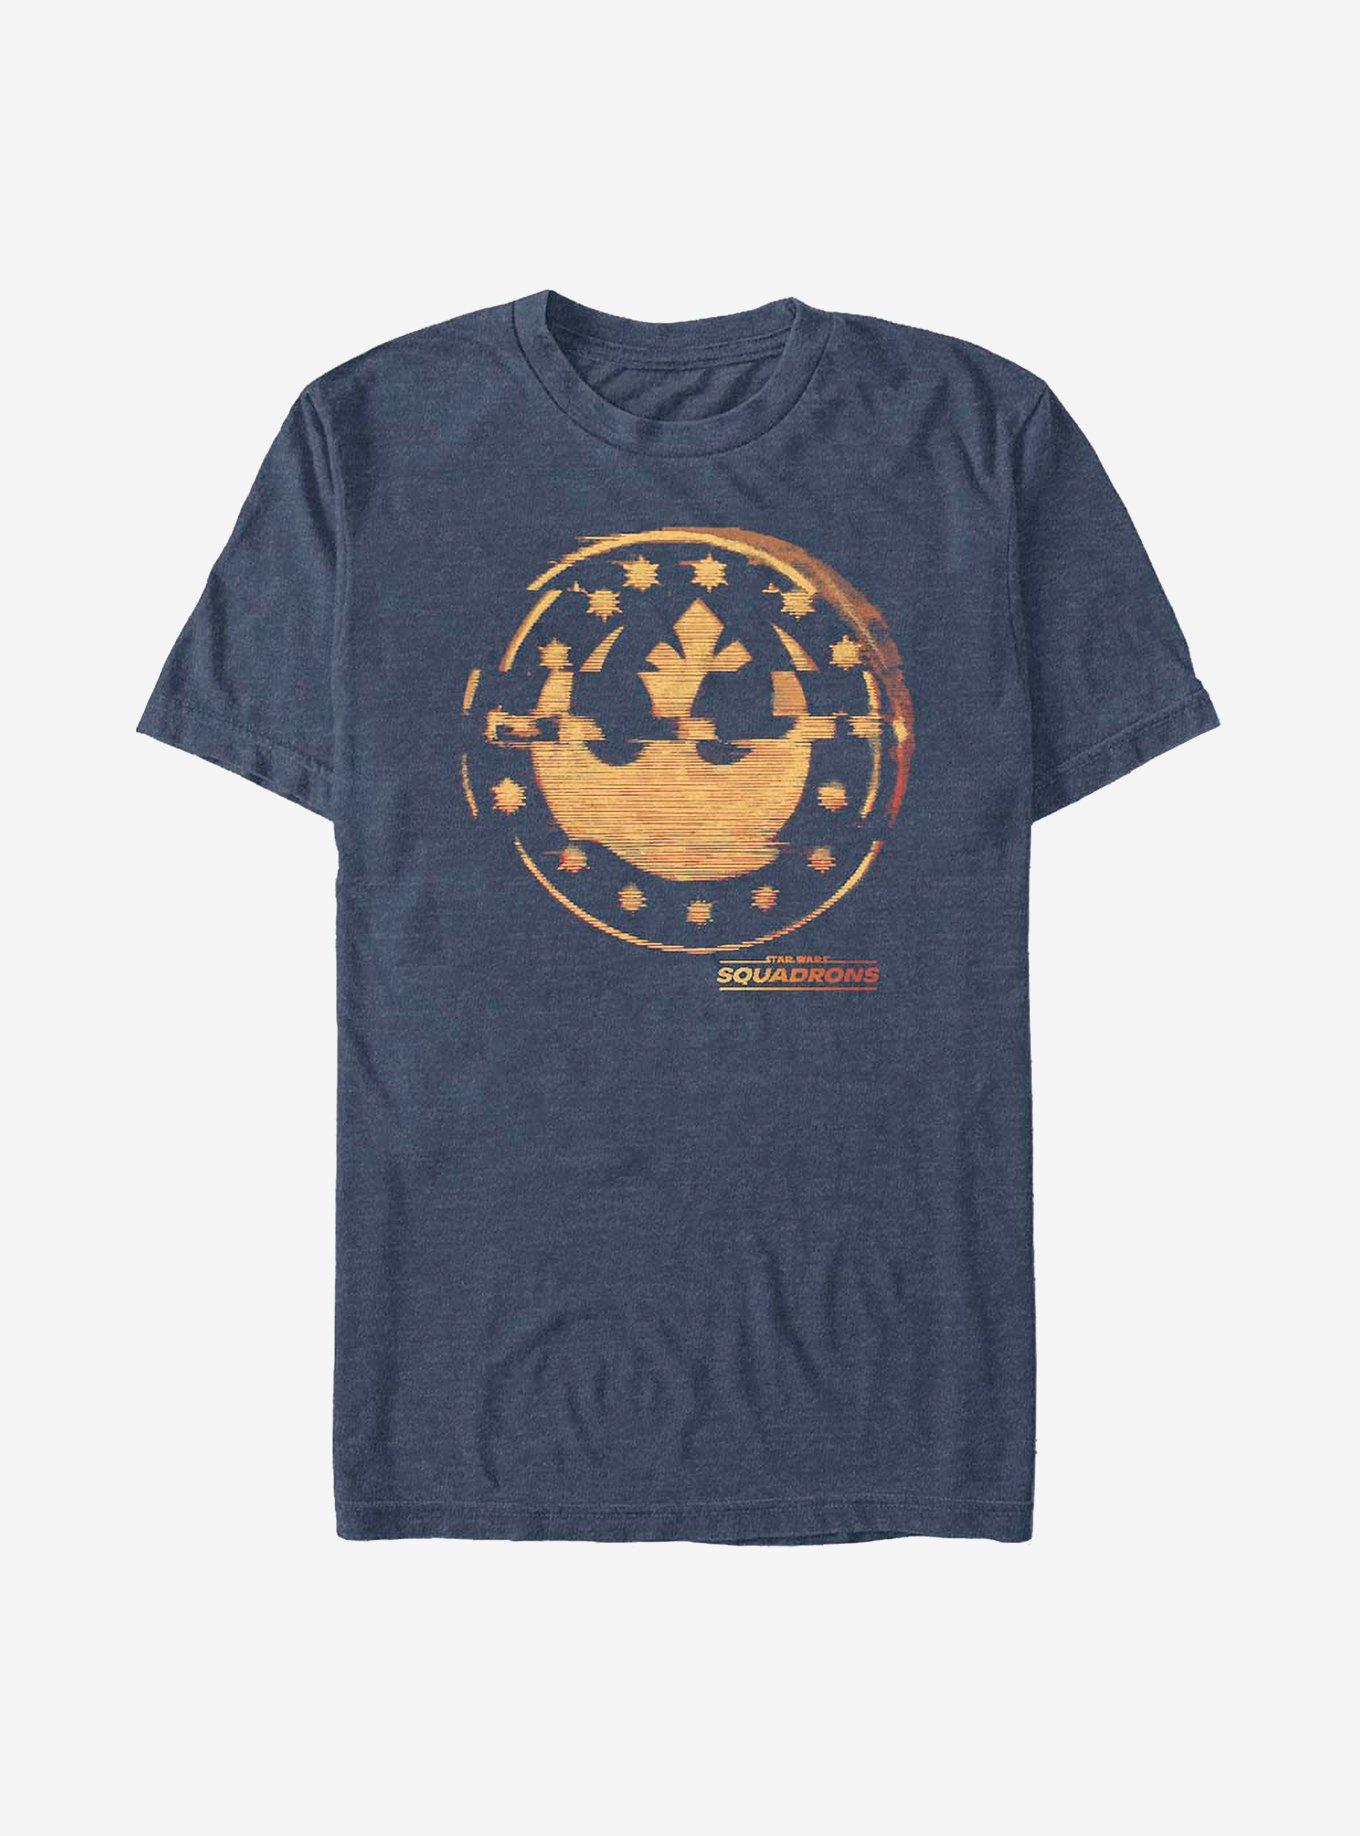 Star Wars Glitched Logo T-Shirt